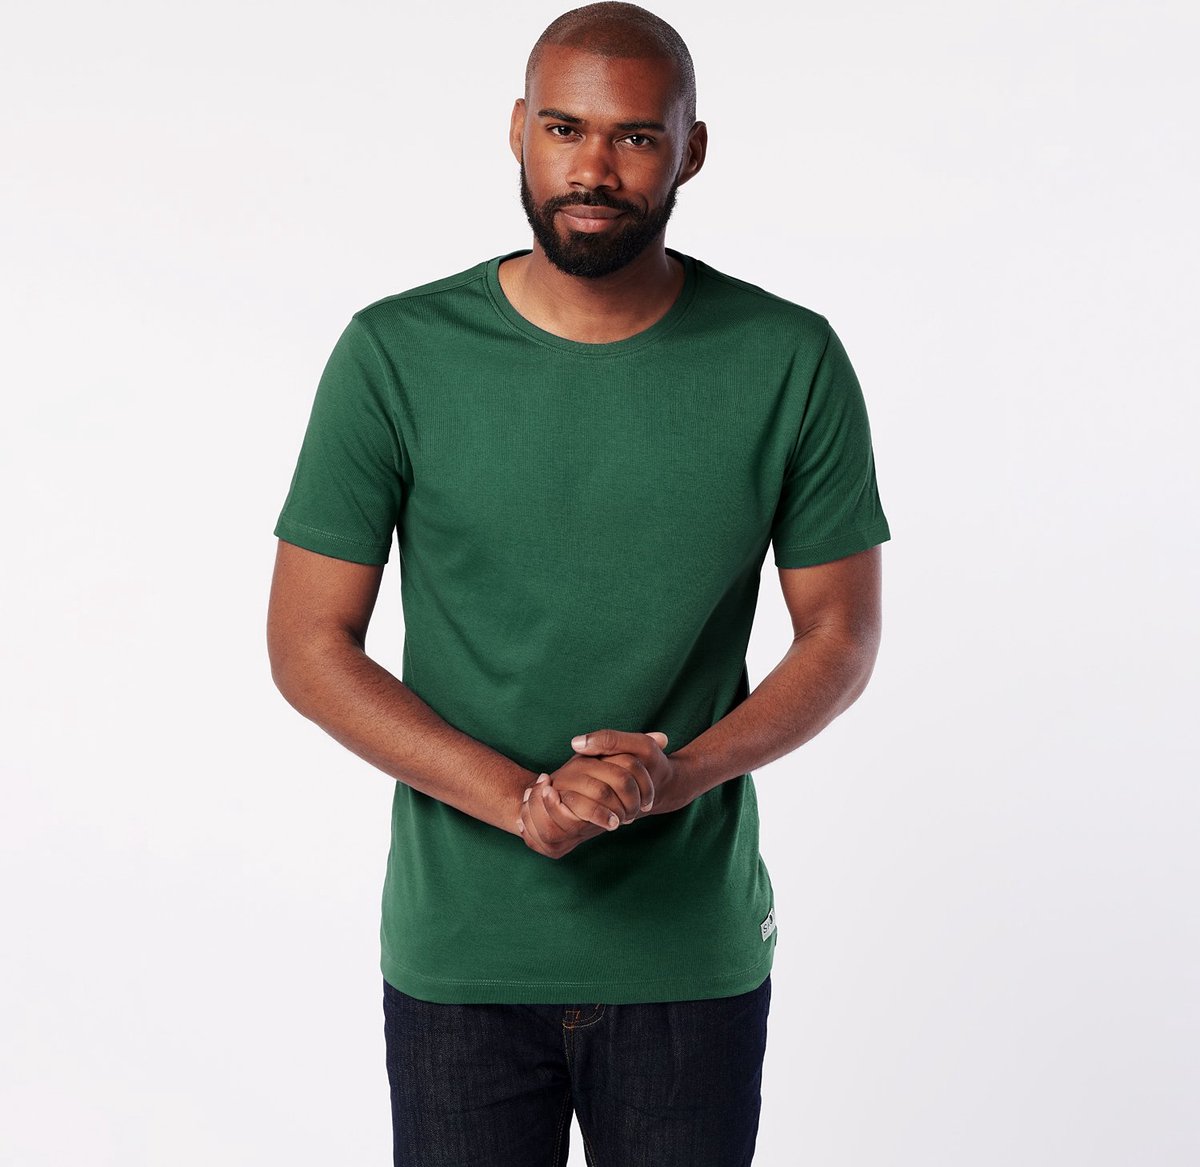 SKOT Duurzaam T-shirt - Jungle - groen - Maat S